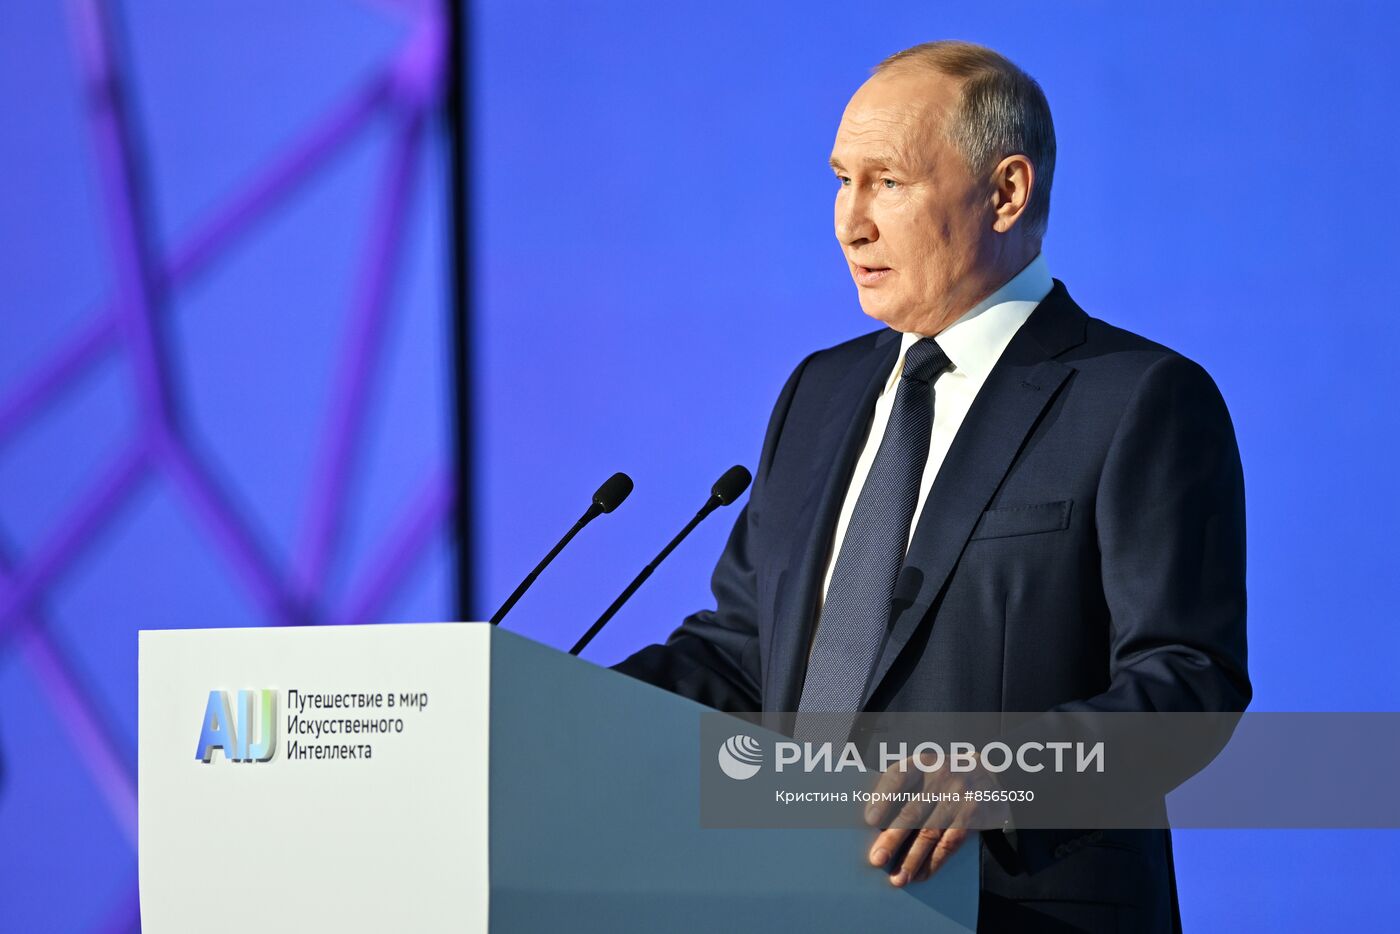 Президент РФ В. Путин посетил конференцию по искусственному интеллекту AI Journey